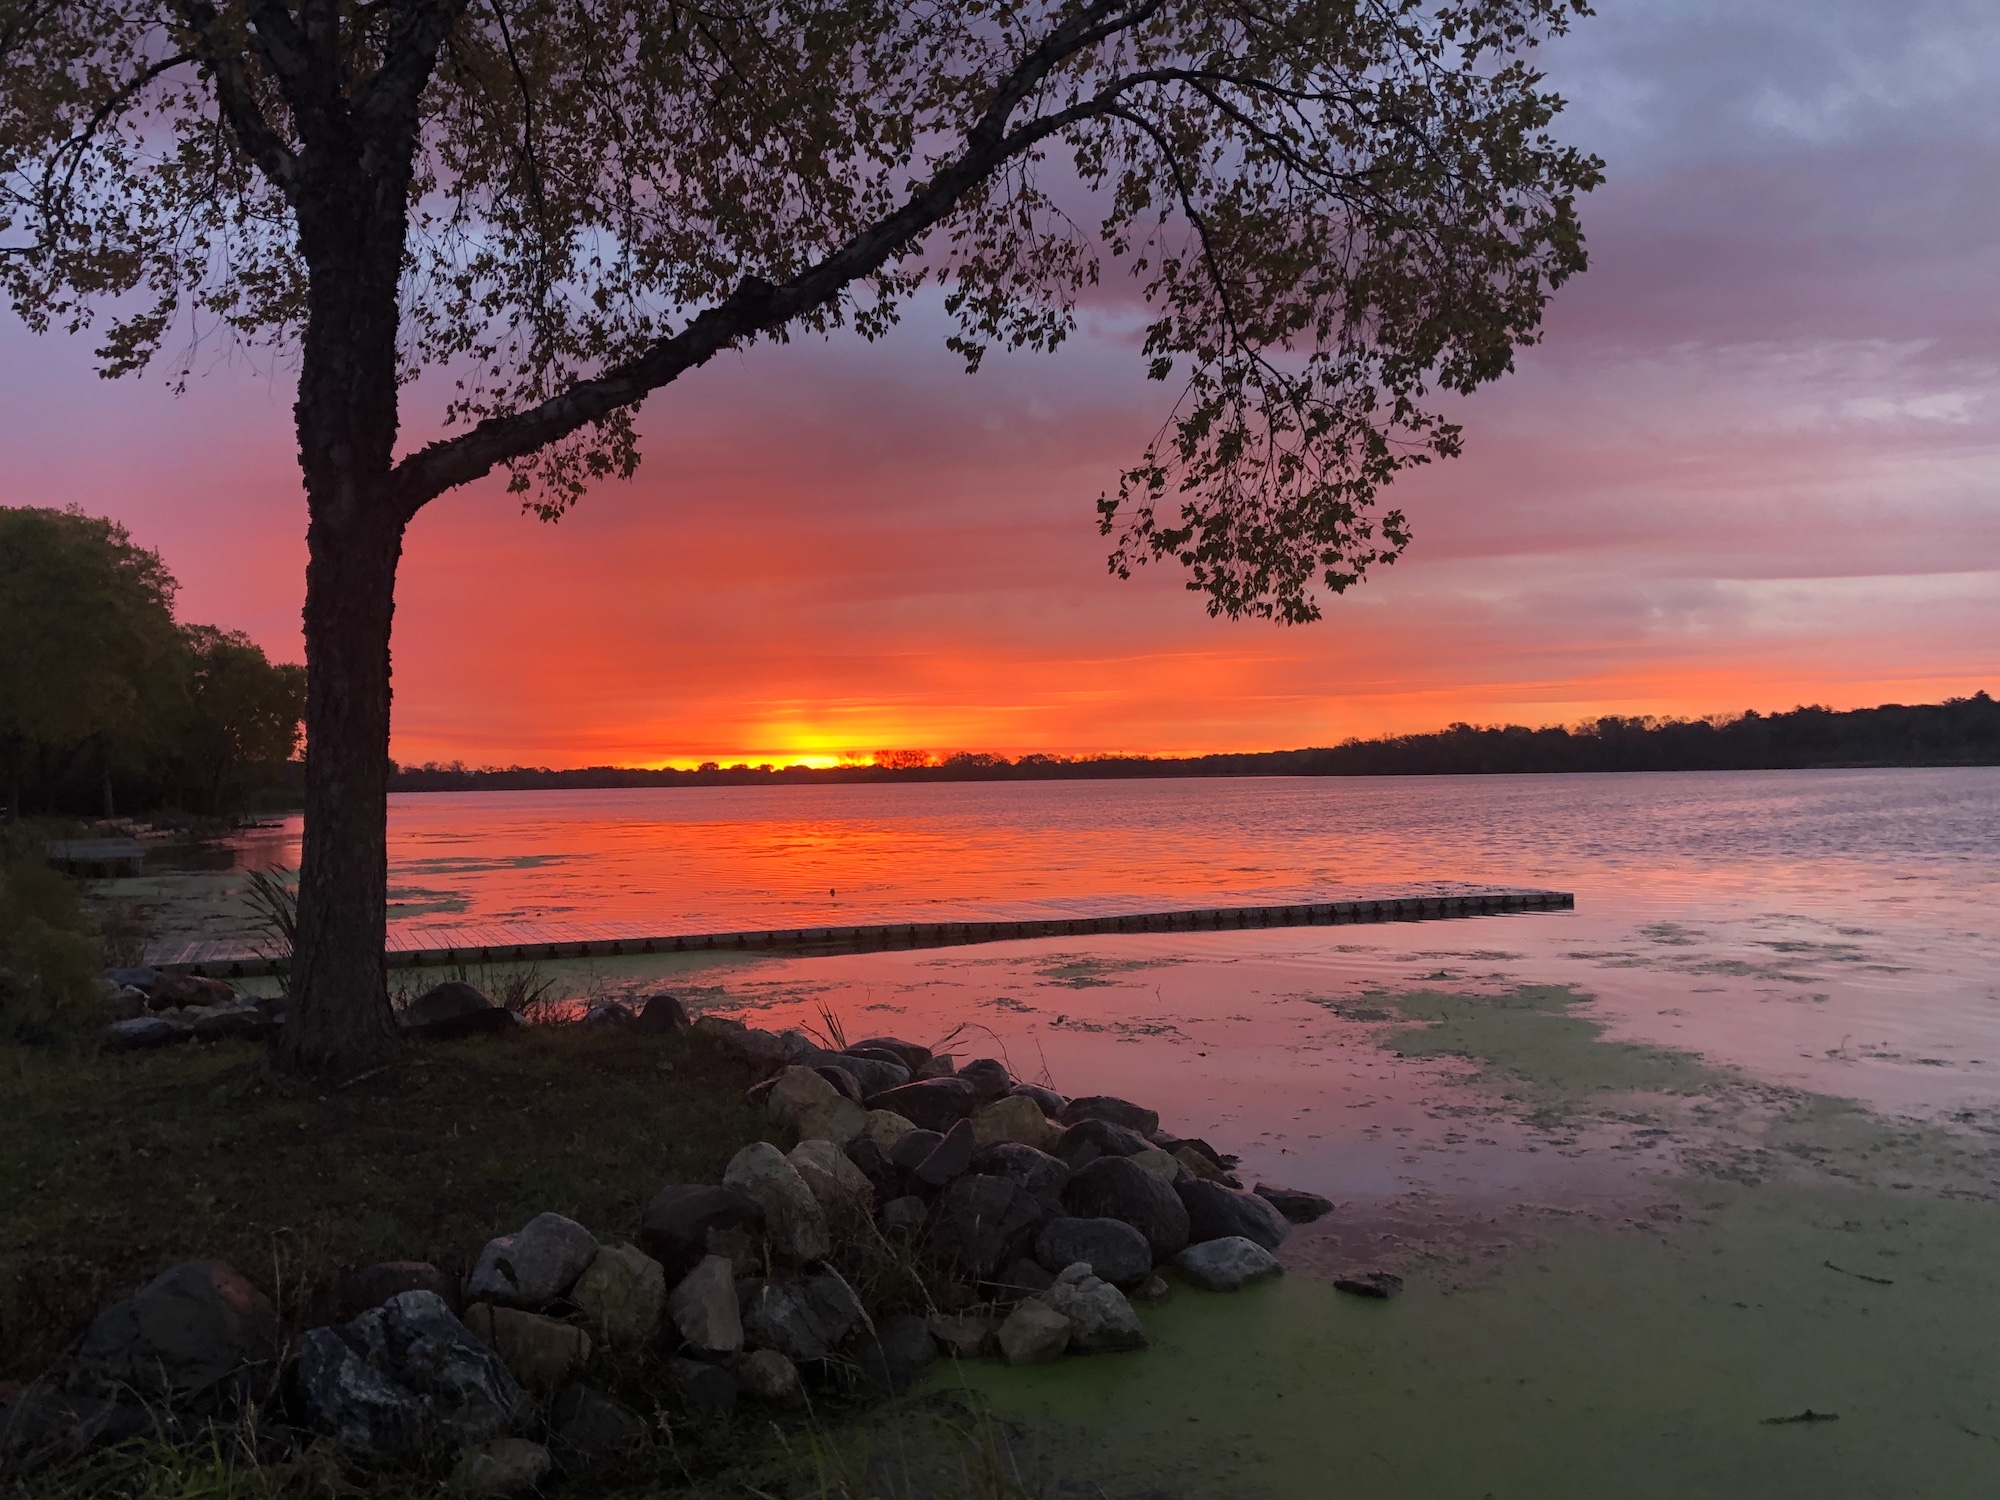 Lake Wingra on October 15, 2019.